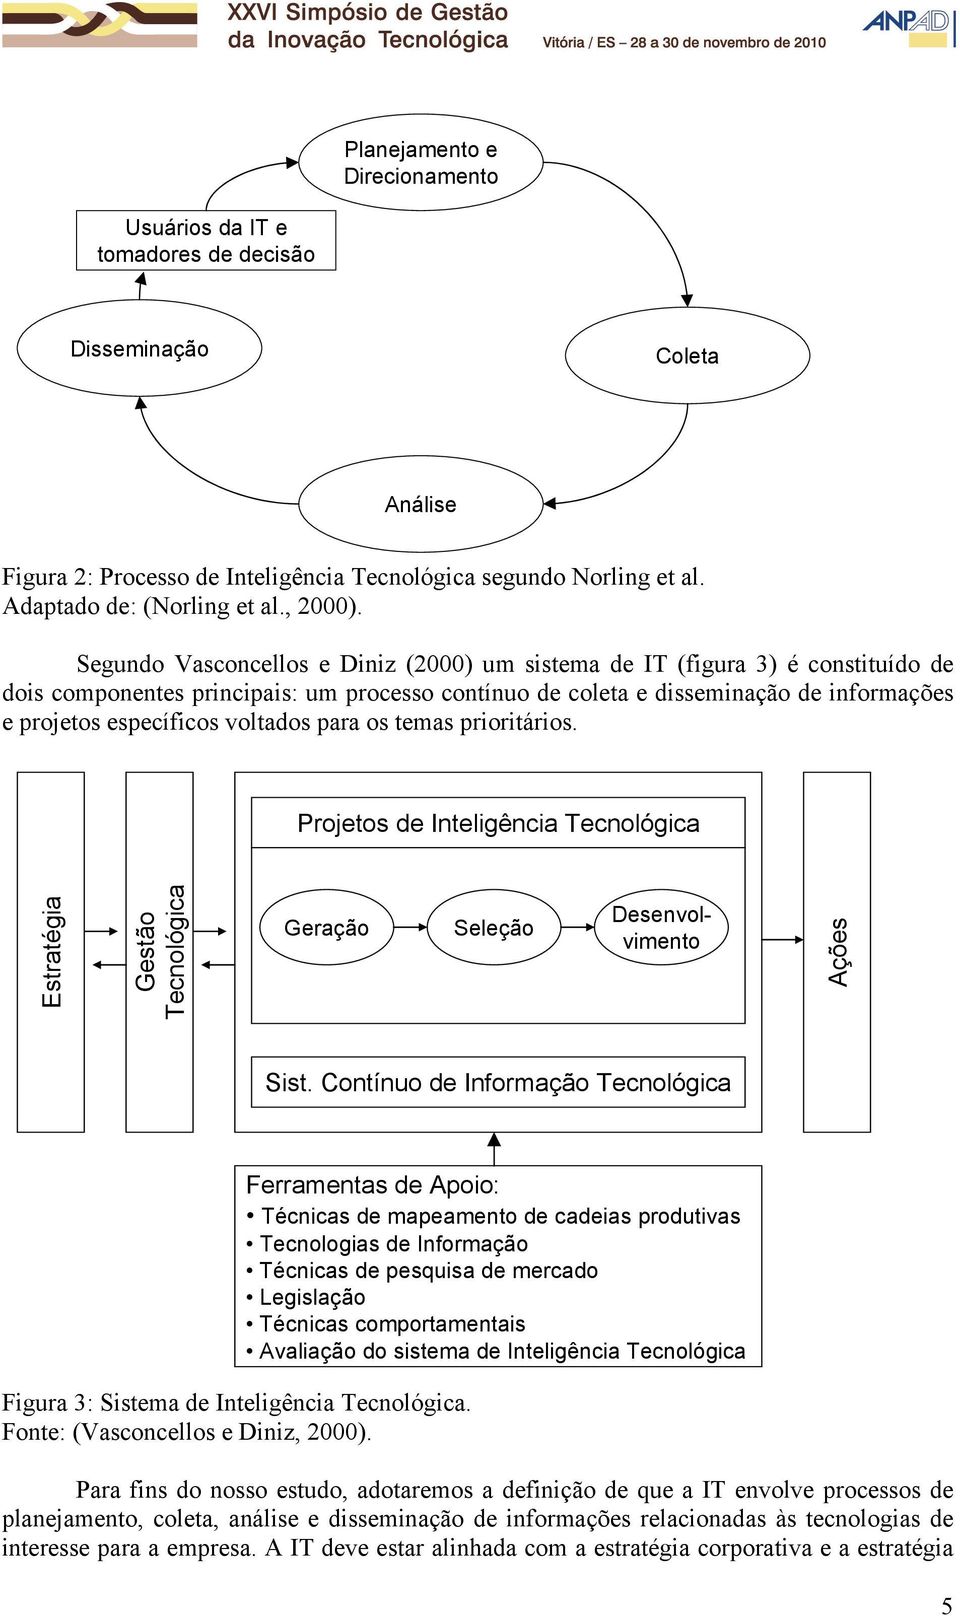 Segundo Vasconcellos e Diniz (2000) um sistema de IT (figura 3) é constituído de dois componentes principais: um processo contínuo de coleta e disseminação de informações e projetos específicos